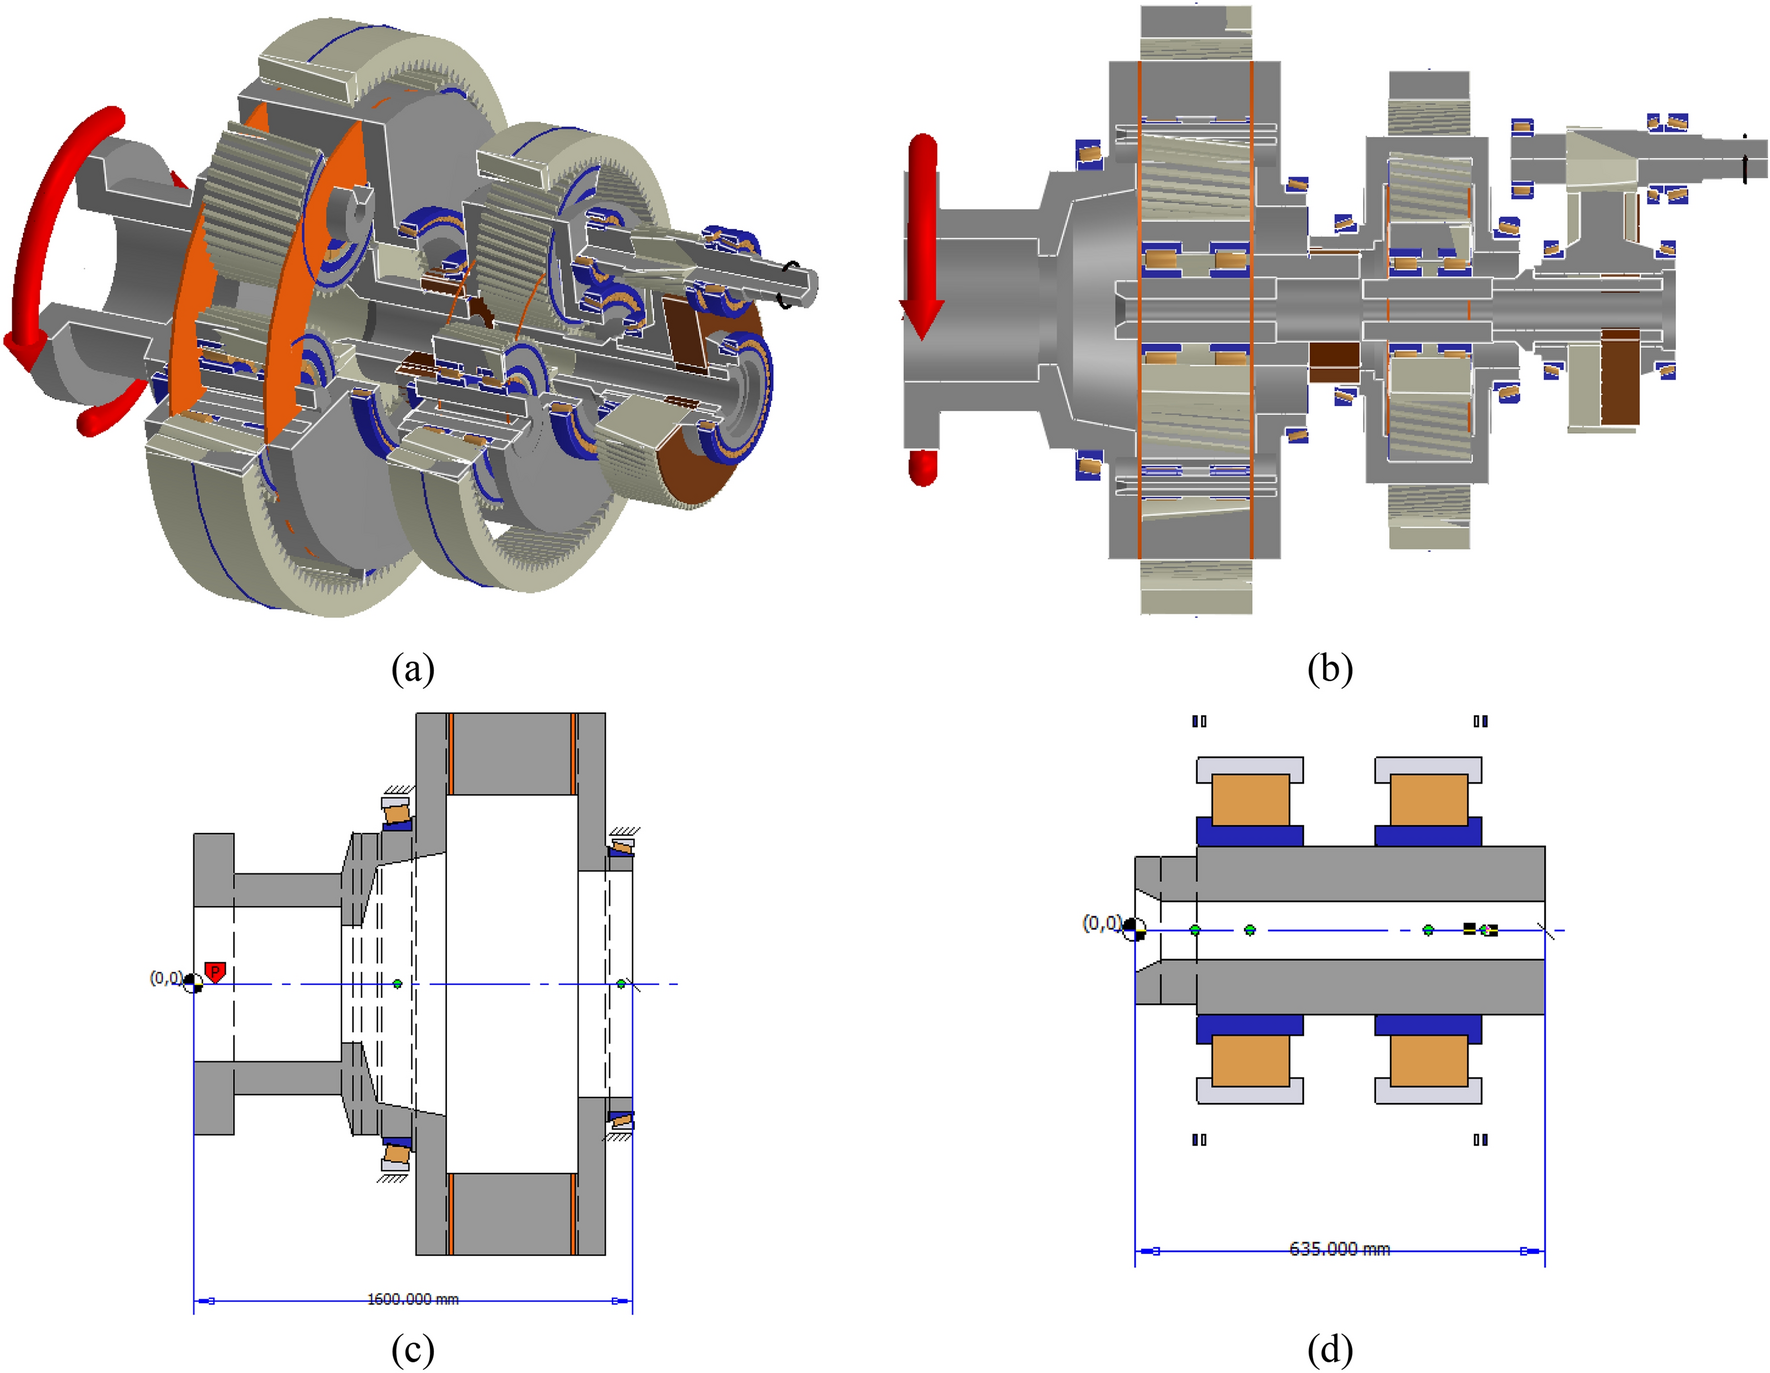 Structure of wind turbine gearbox 1-casing, 2-sun gear, 3